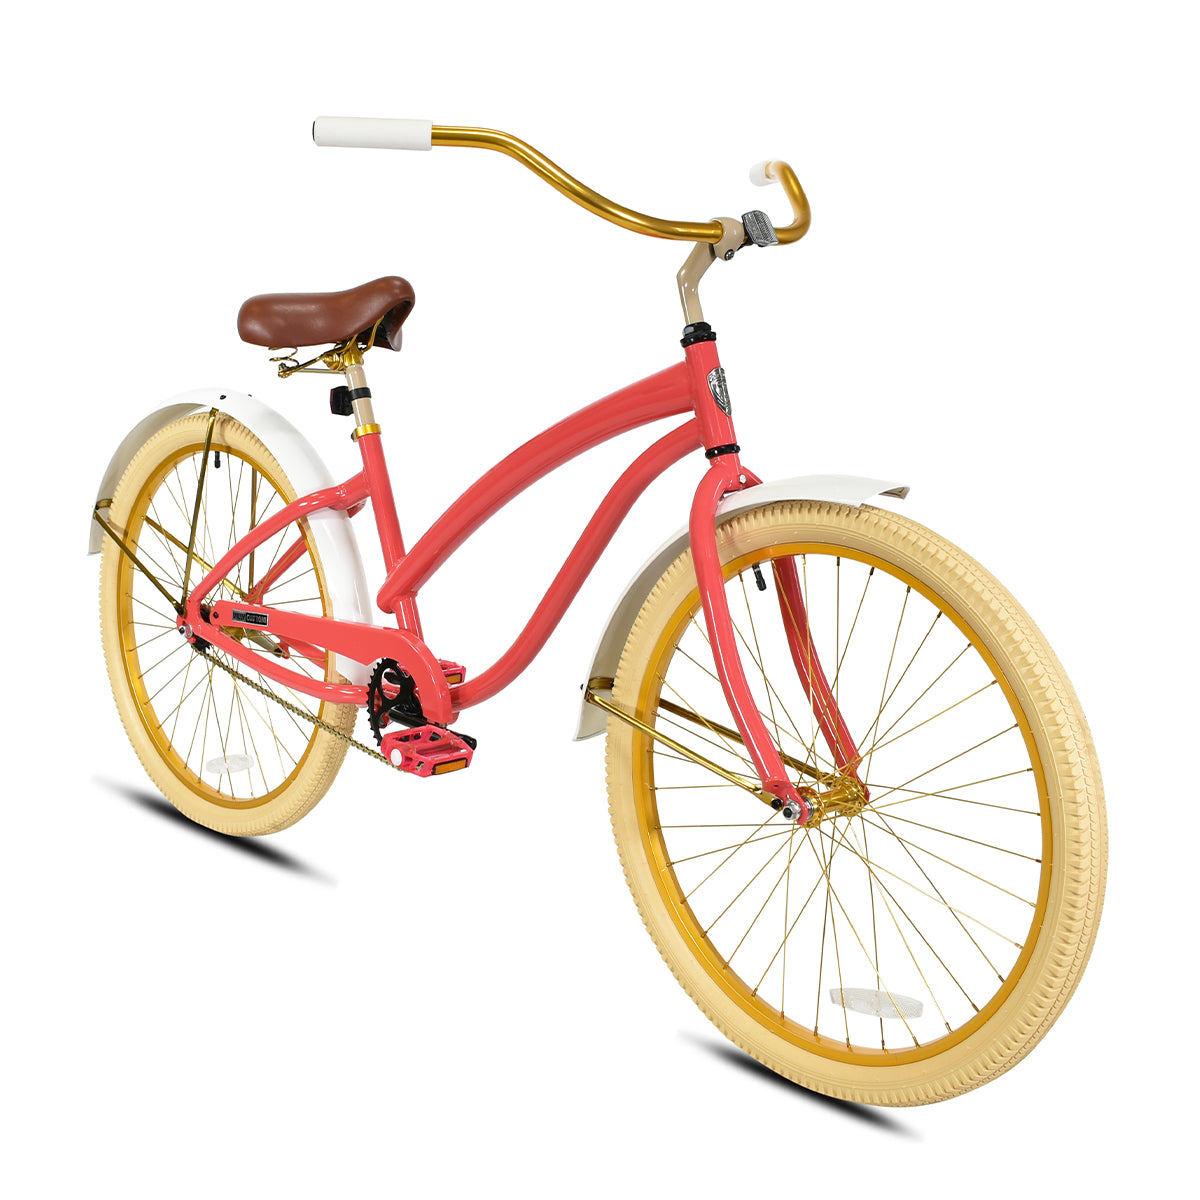 Custom Bike Co. - GRIPPY & WALLET FRIENDLY💰 📸 BLVCK